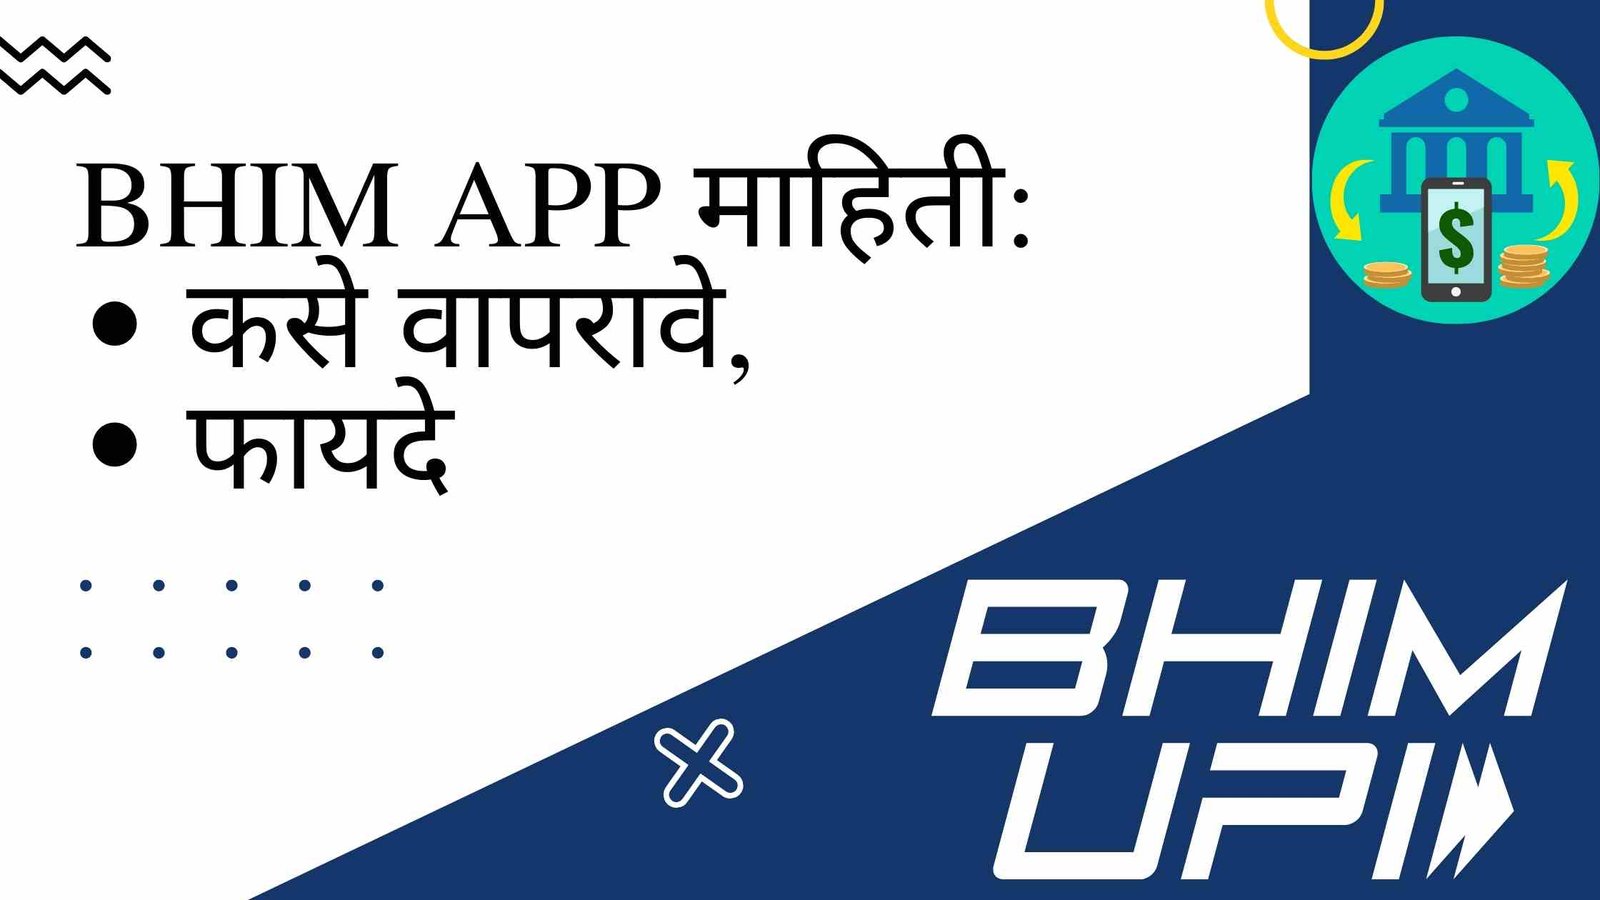 BHIM APP information in Marathi